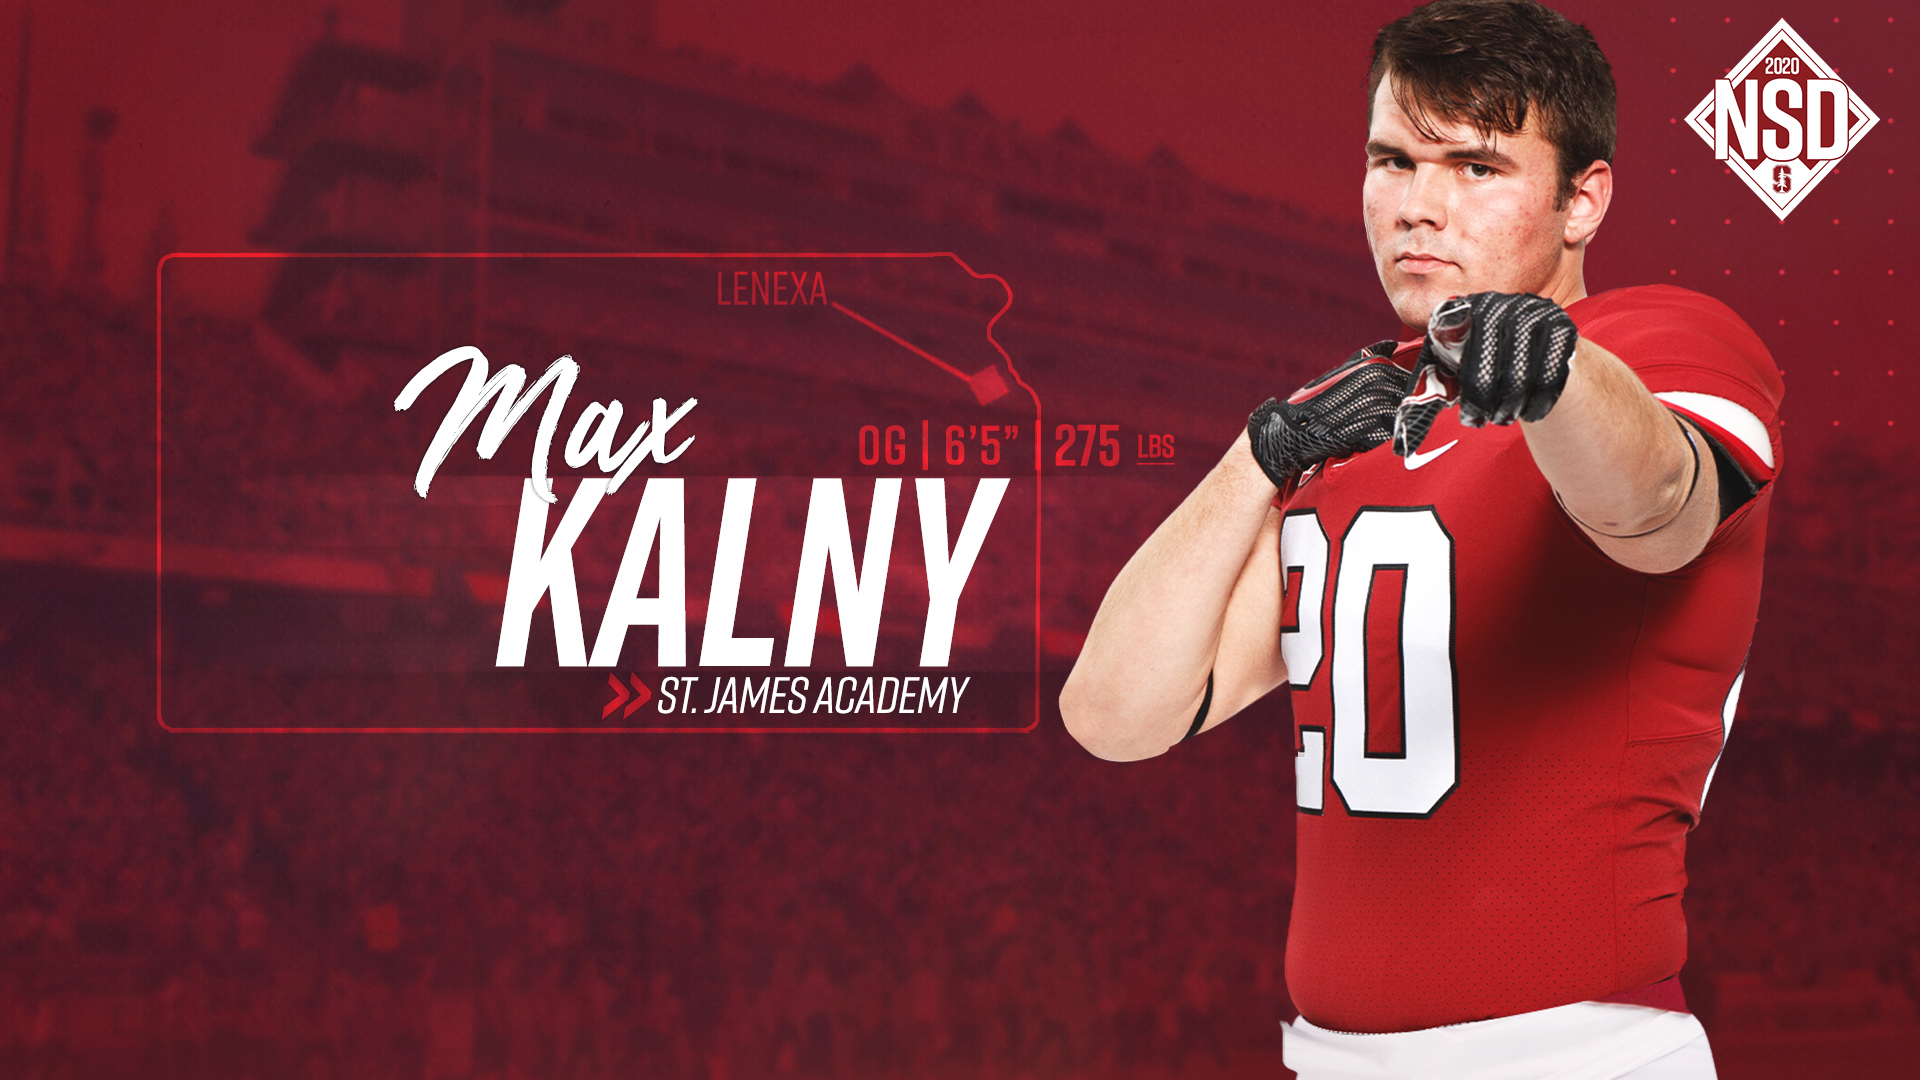 Max Kalny - Football - Stanford University Athletics